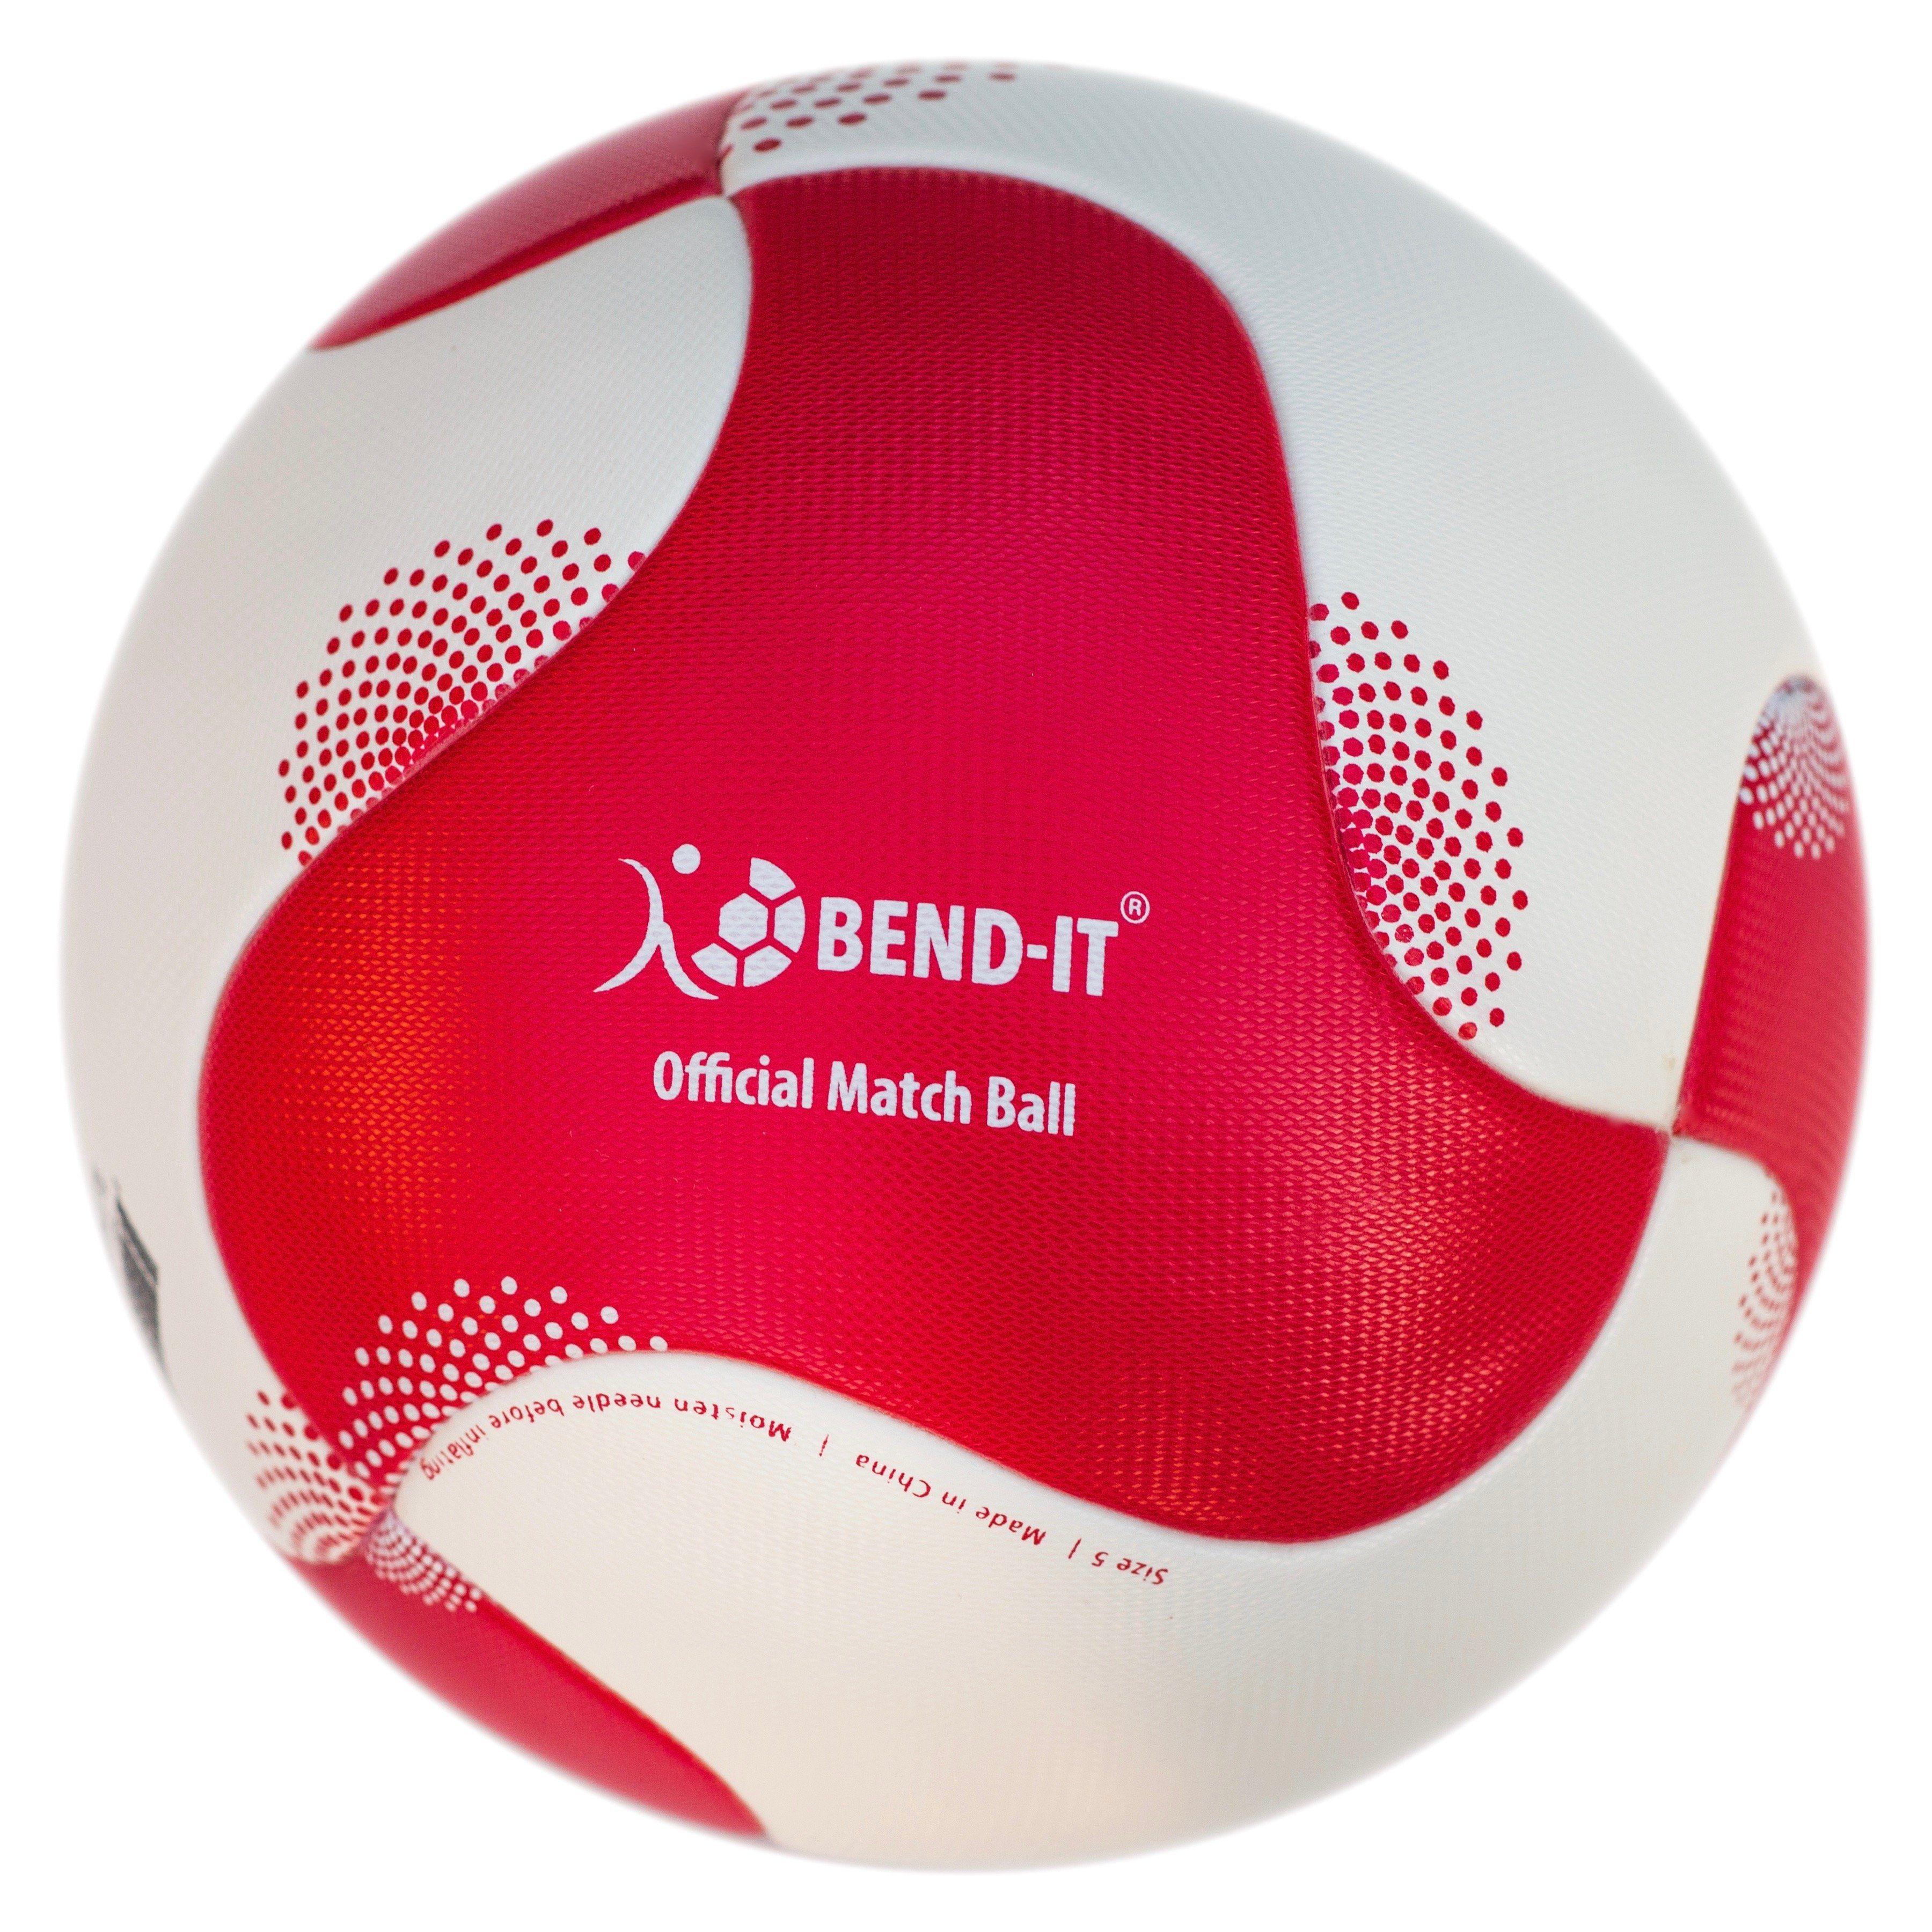 Five Ball Diadora Logo - Bend It Soccer, Reverse Curl It Supreme, Soccer Ball Match Ball